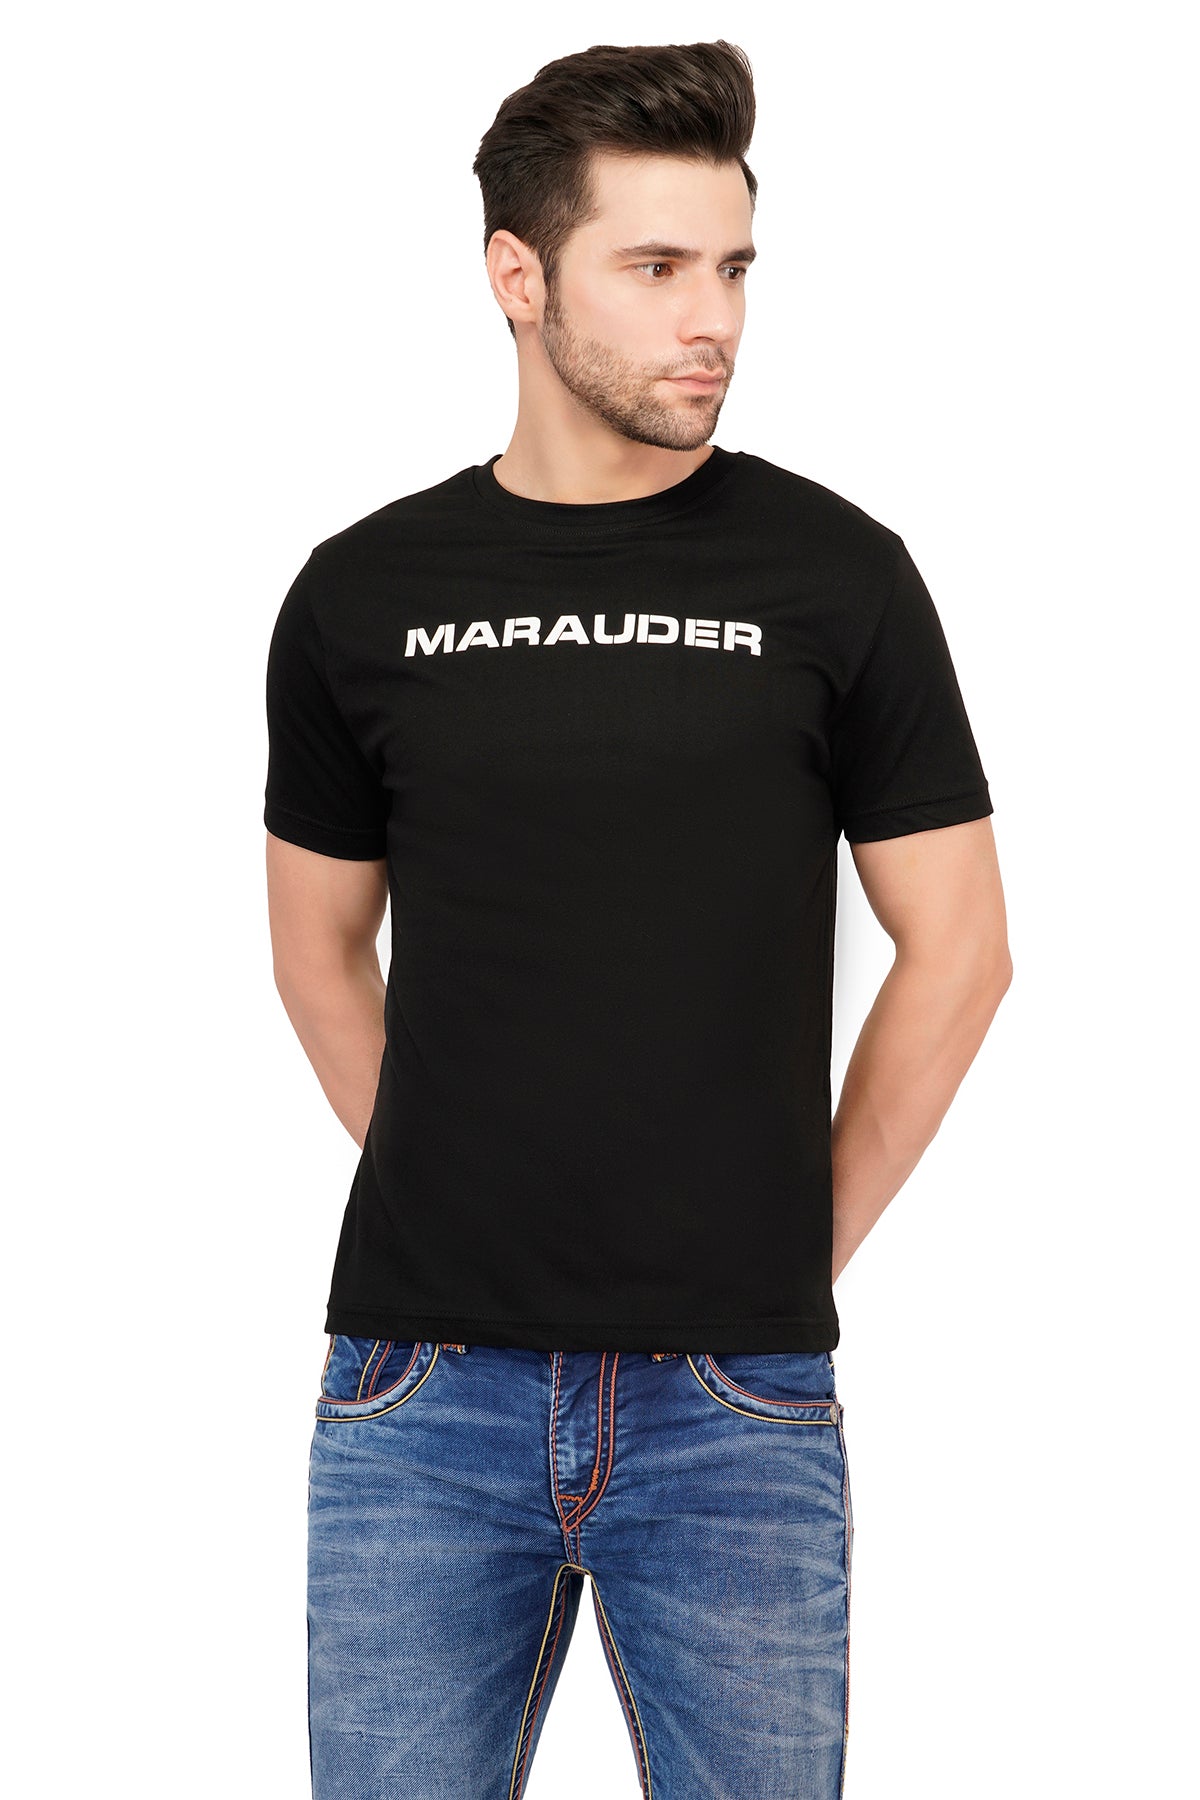 Men's MARAUDER cotton t-shirt